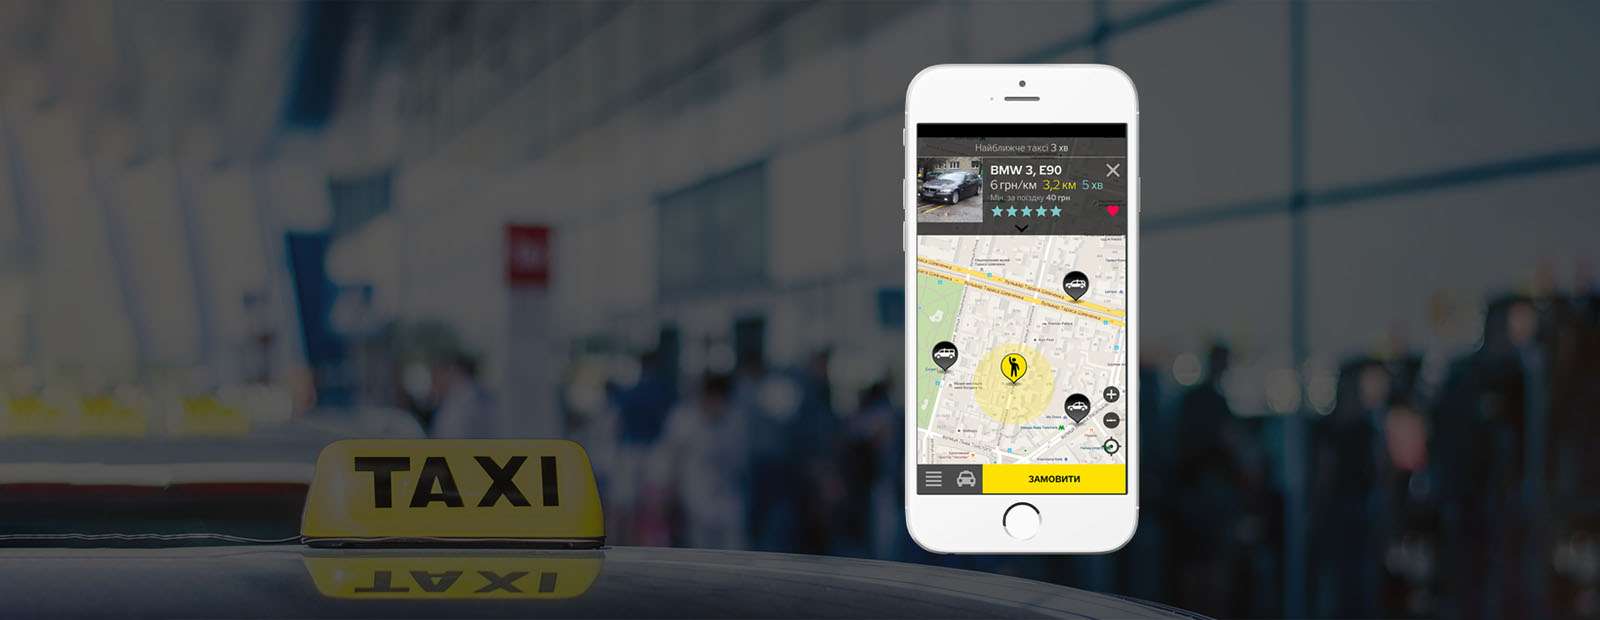 Службы такси с хорошими ценами на поездку в одном приложении